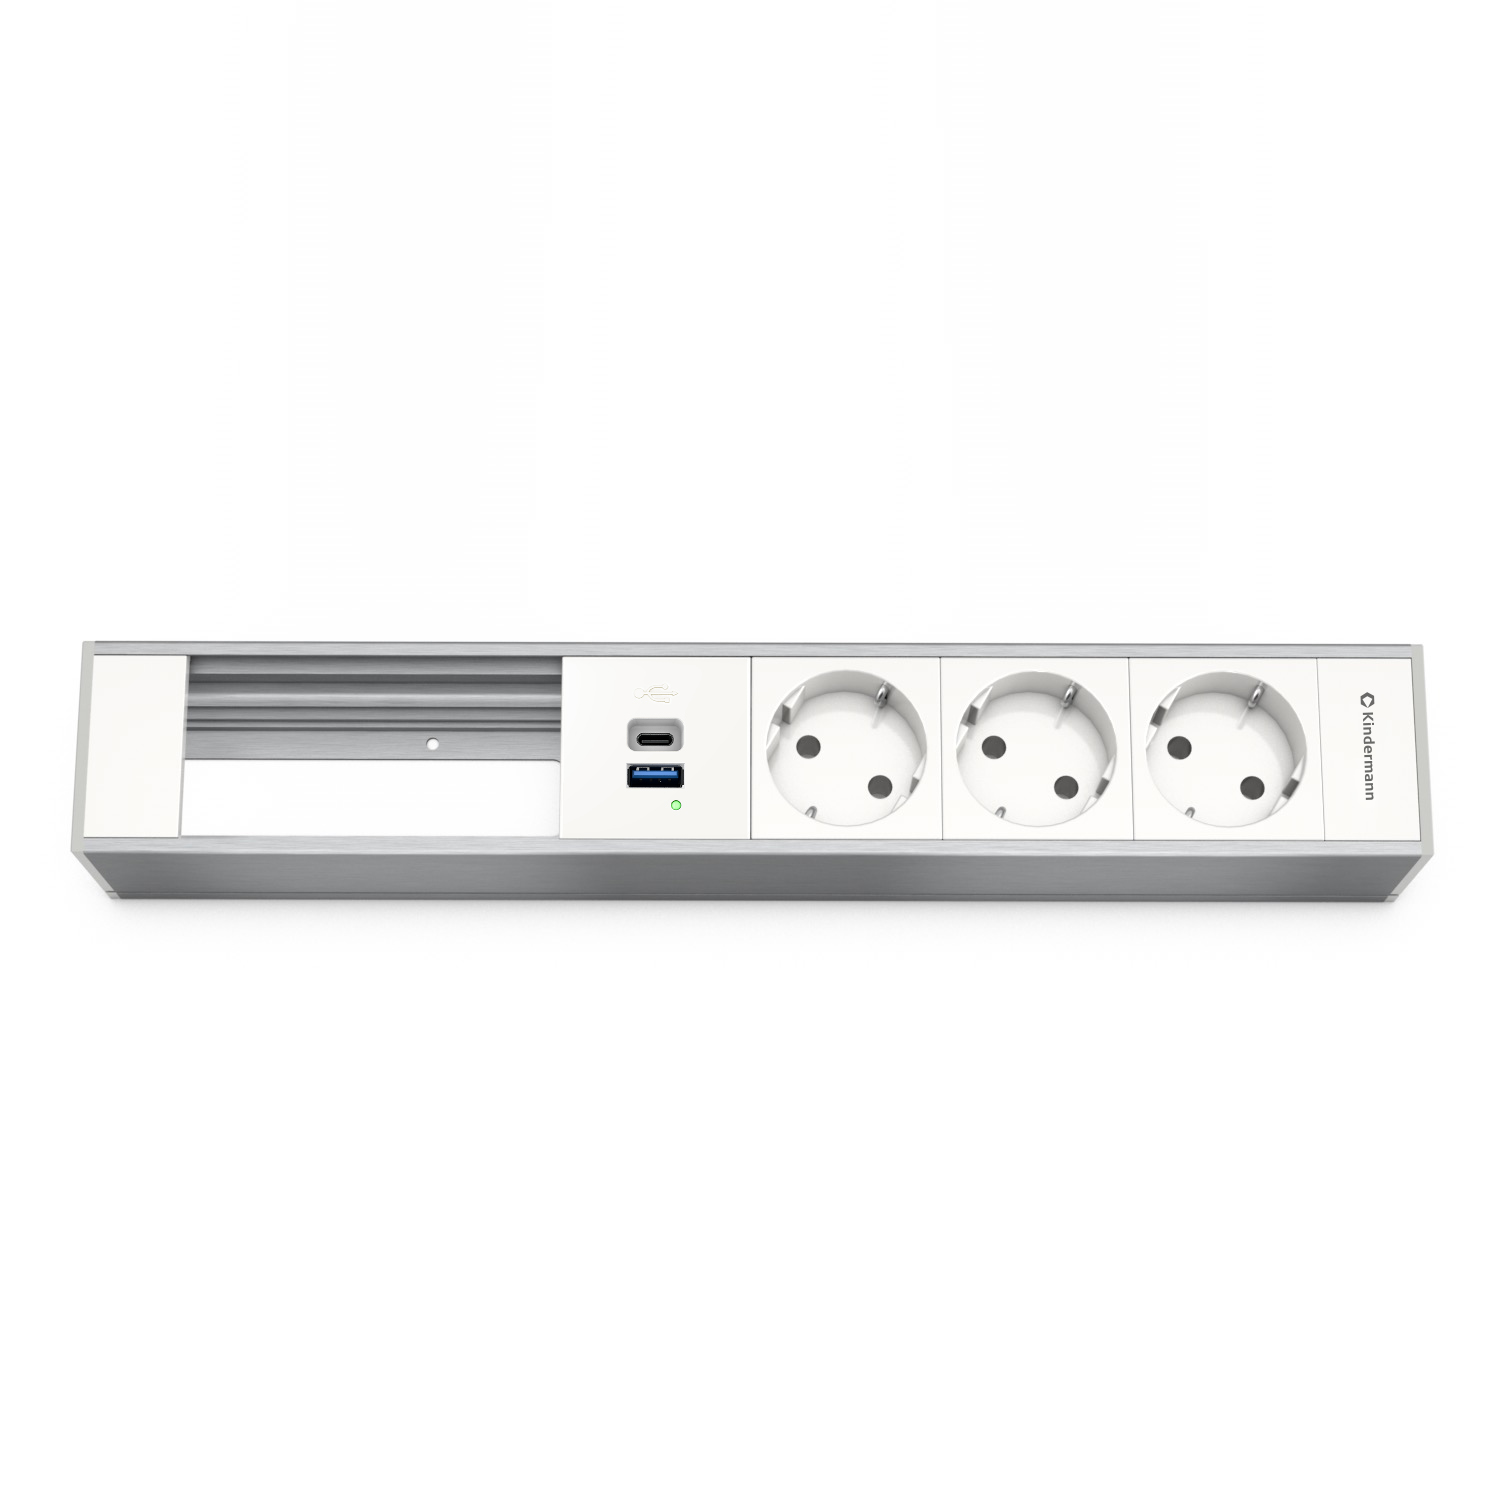 Kindermann Modulträger 6-fach 3xStrom - 1x USB-A / 1x USB-C - Tischanschlussfeld - Aluminium natur - eloxiert